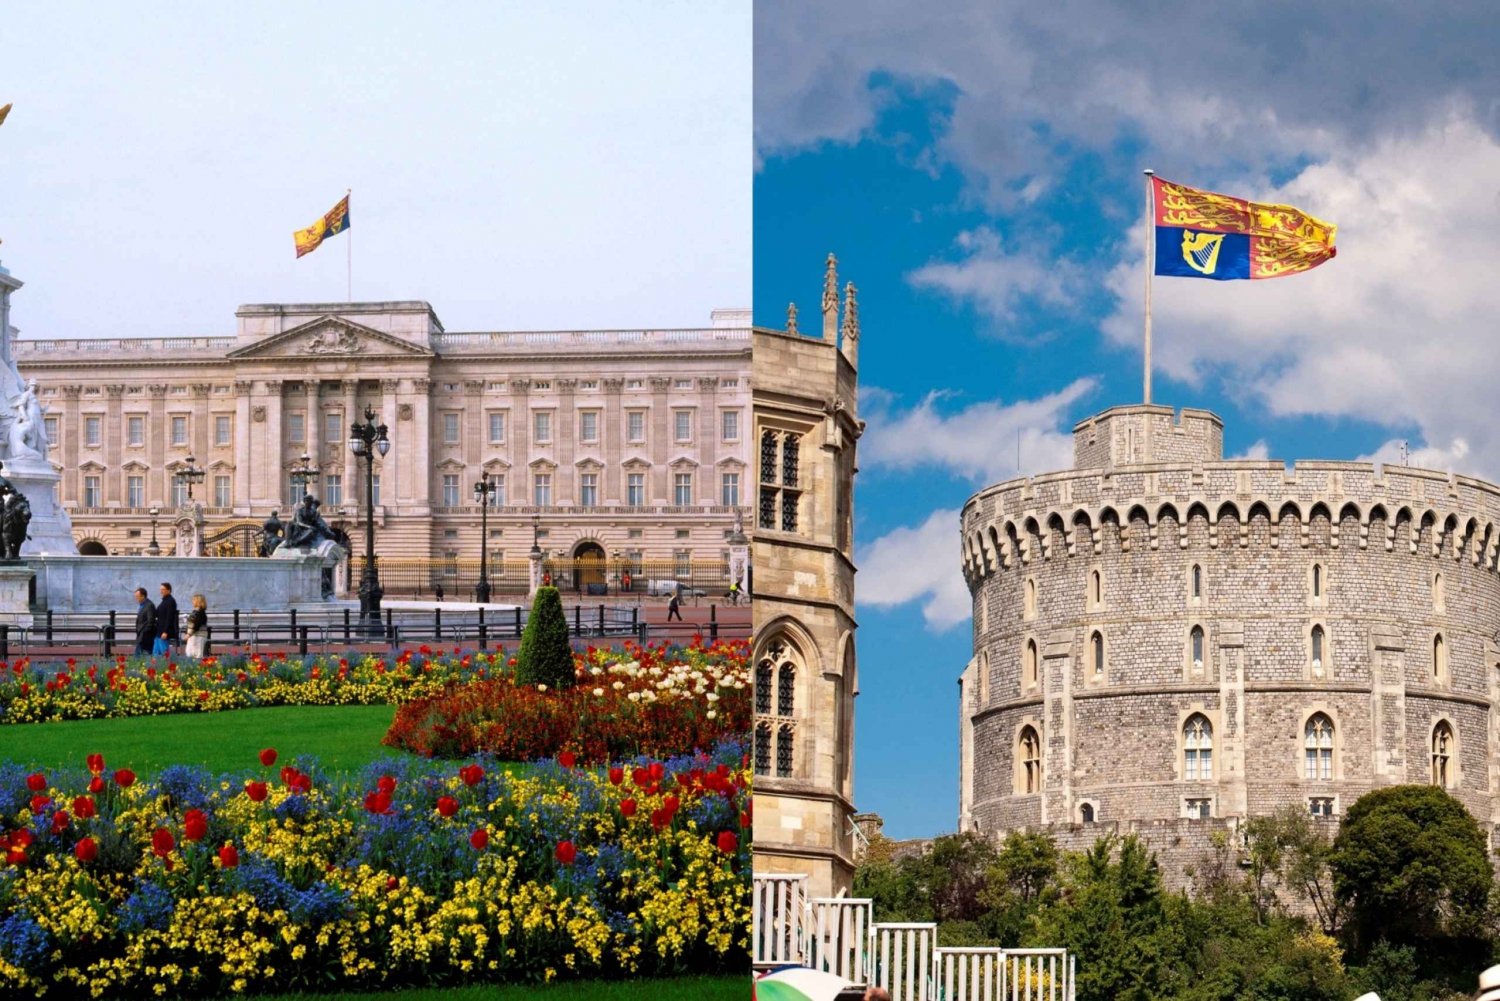 Londres e Windsor: excursão guiada de dia inteiro aos locais reais